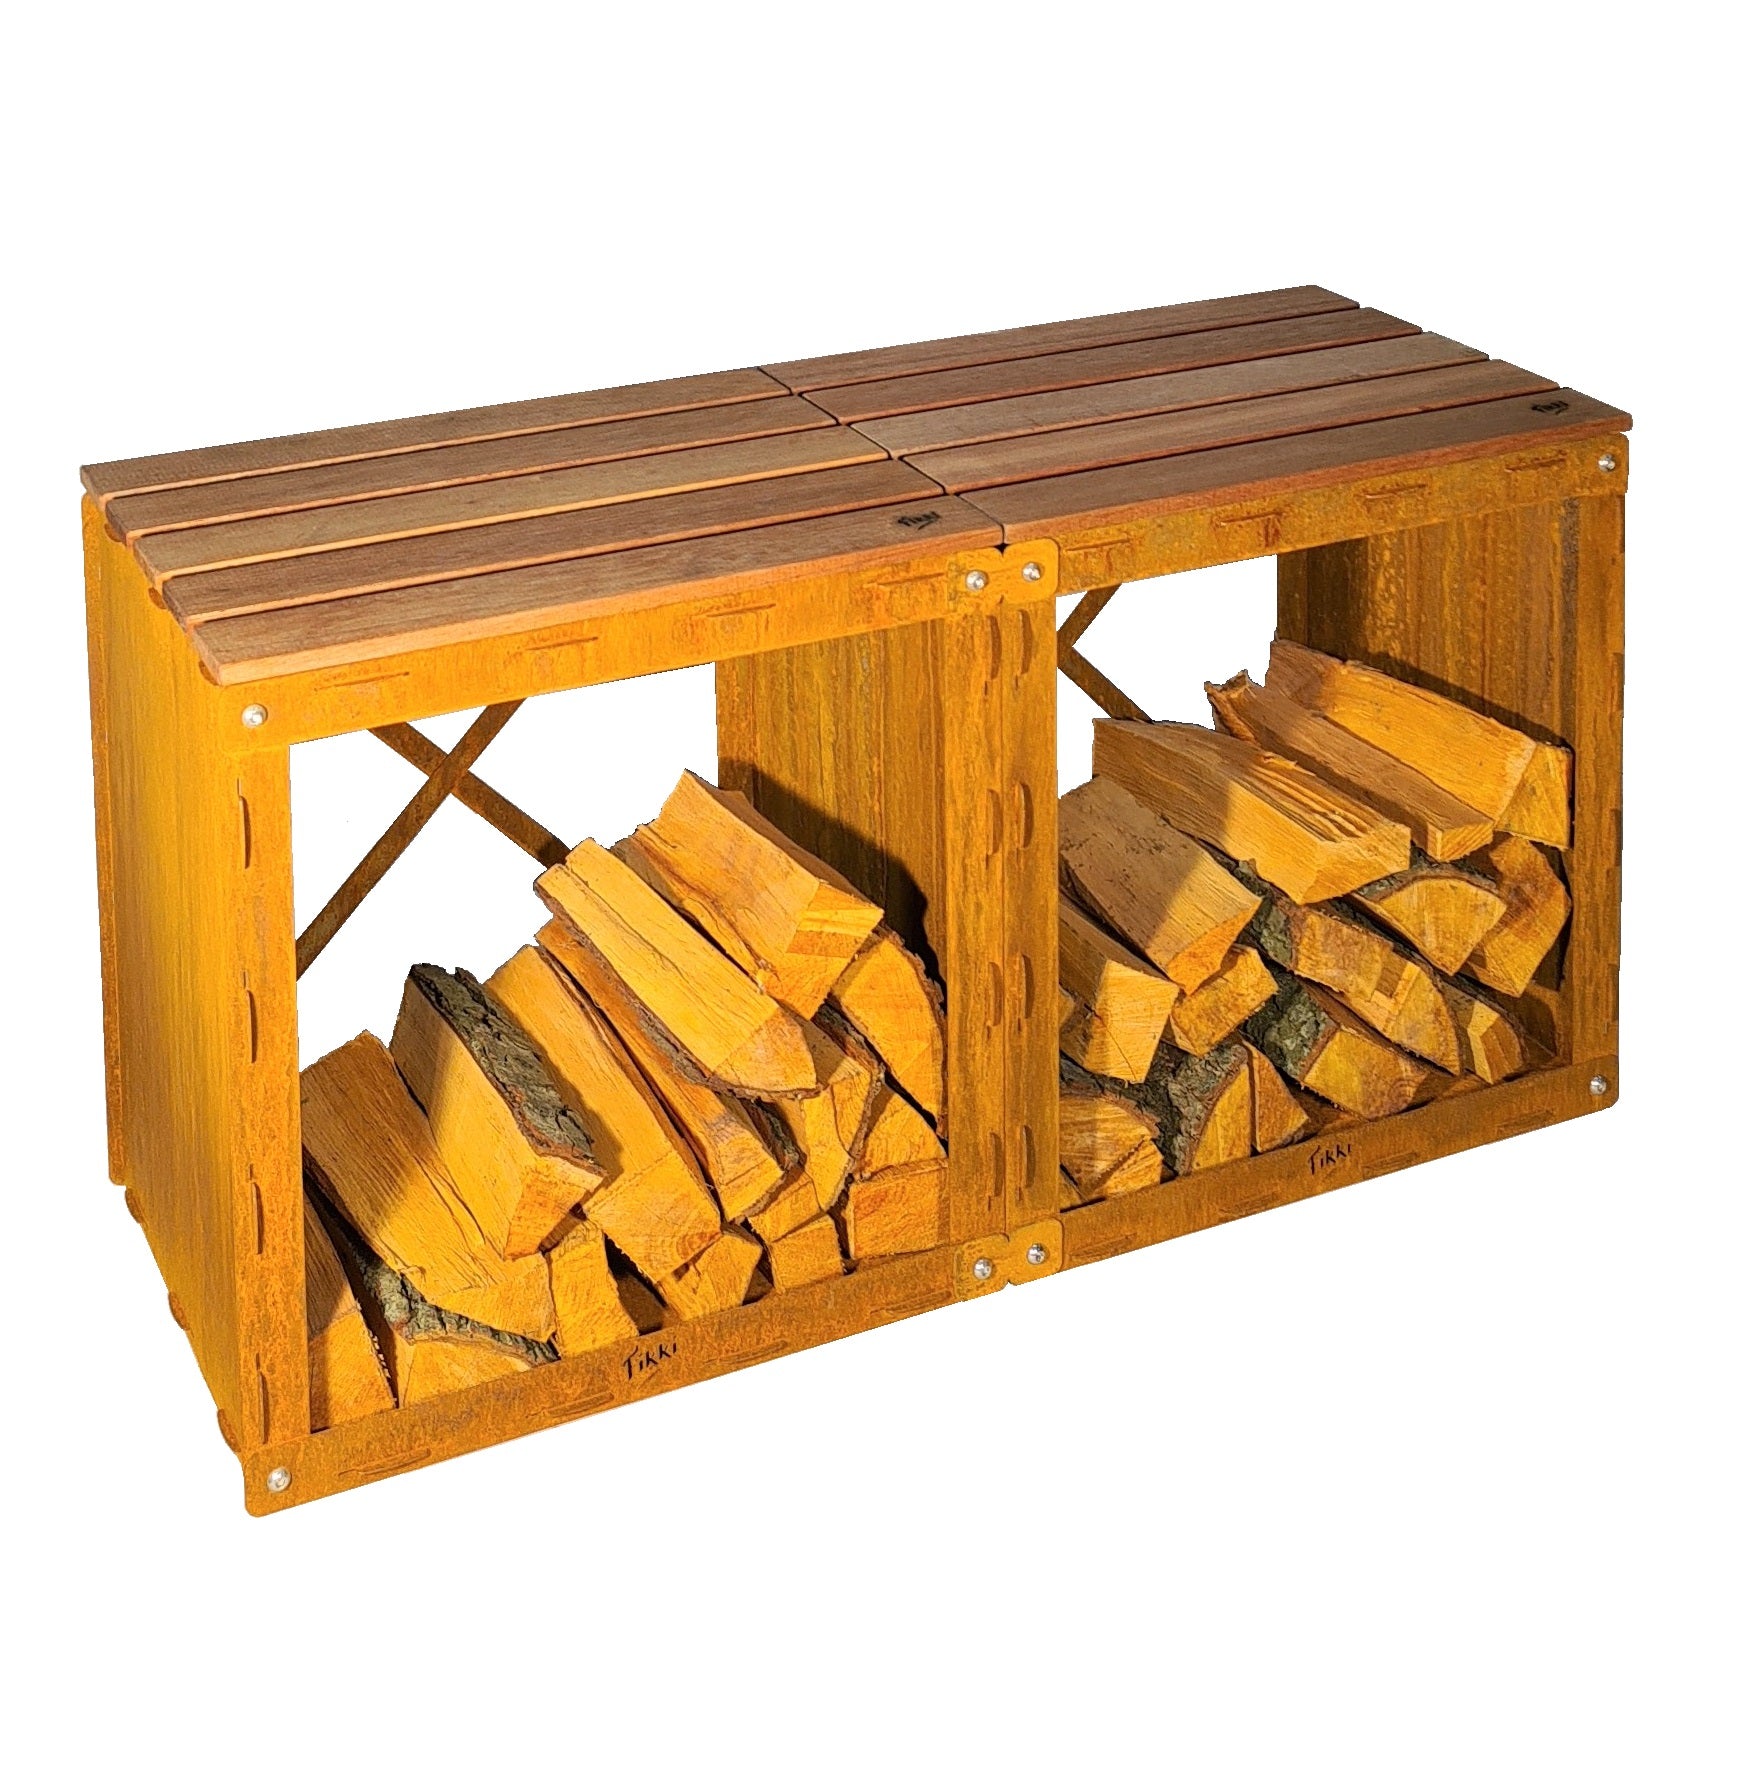 Fikki Wood Storage Bench